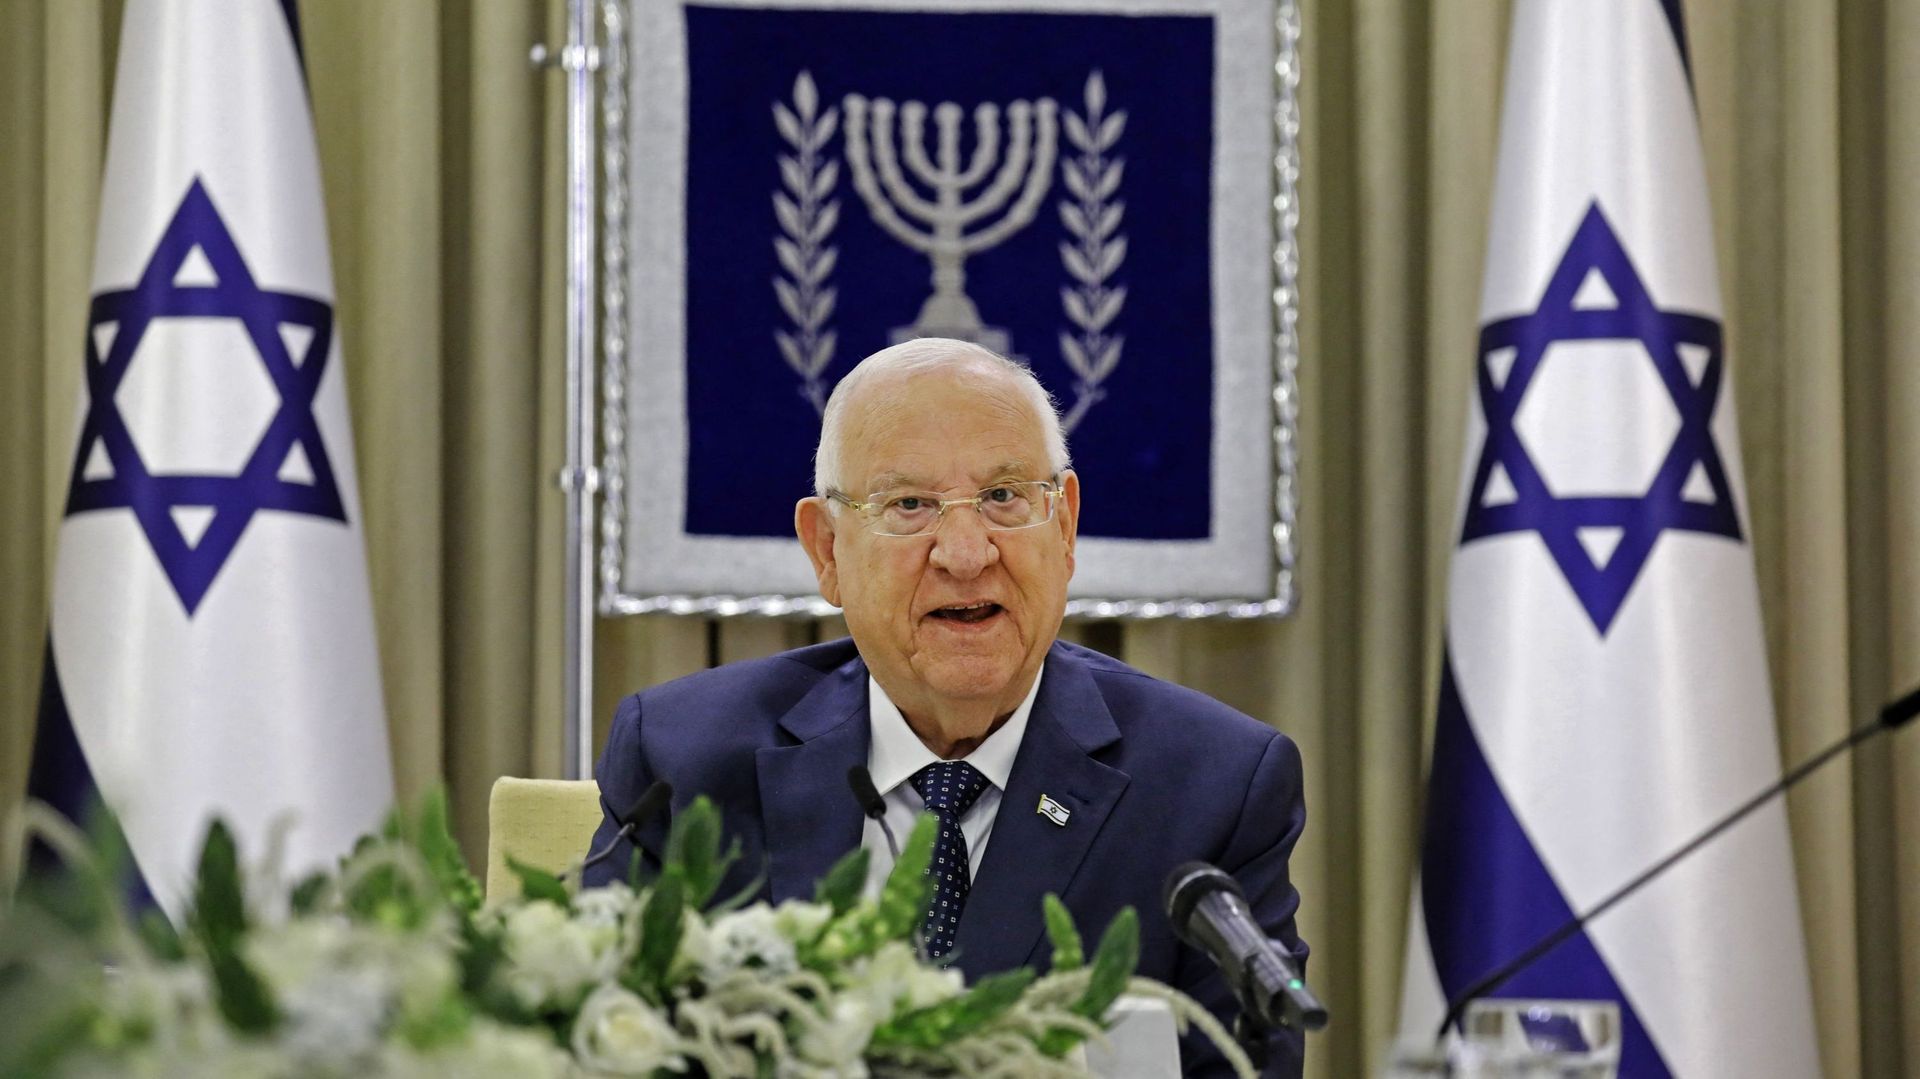 Le président israélien se dit "heureux" de se rendre à Washington avant la fin de son mandat, le 5 juillet